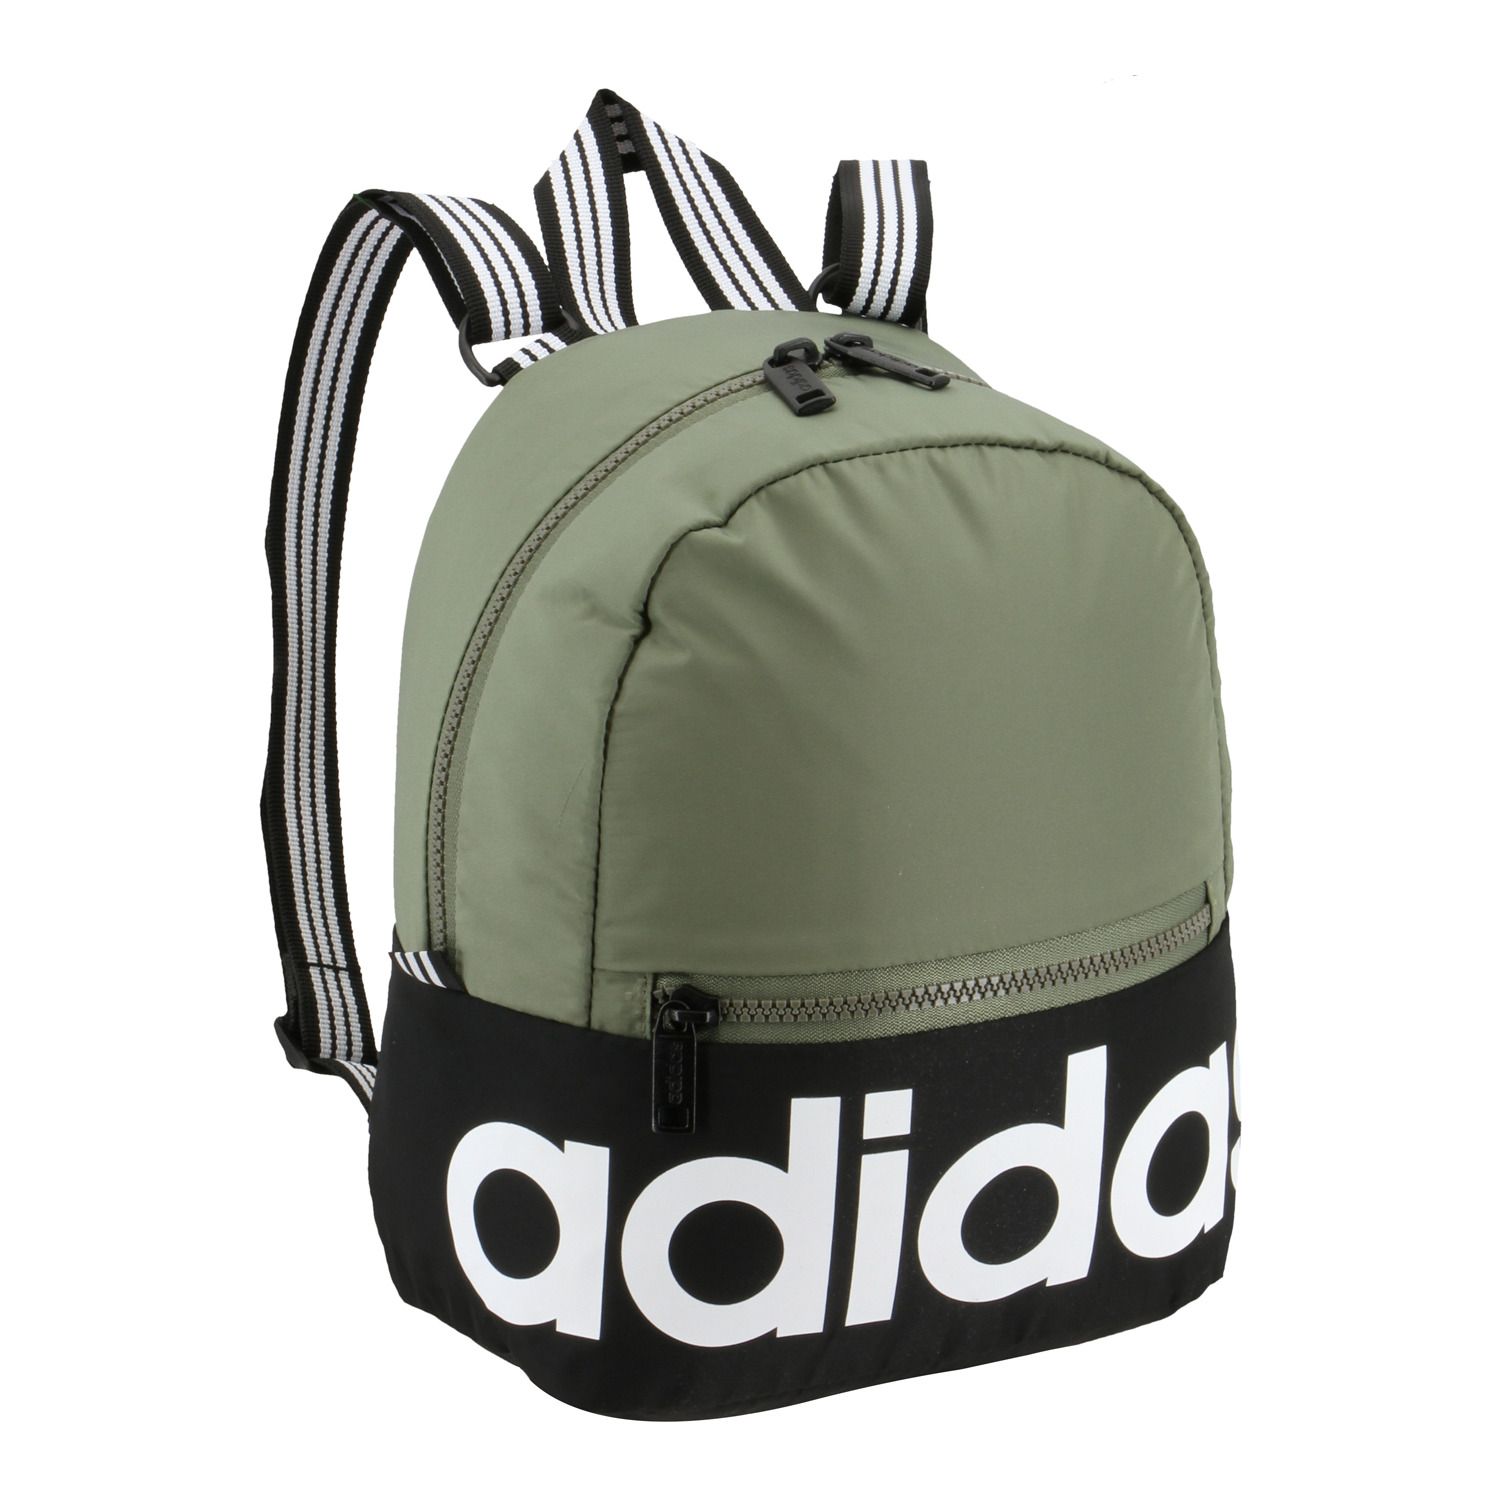 adidas mini backpack green